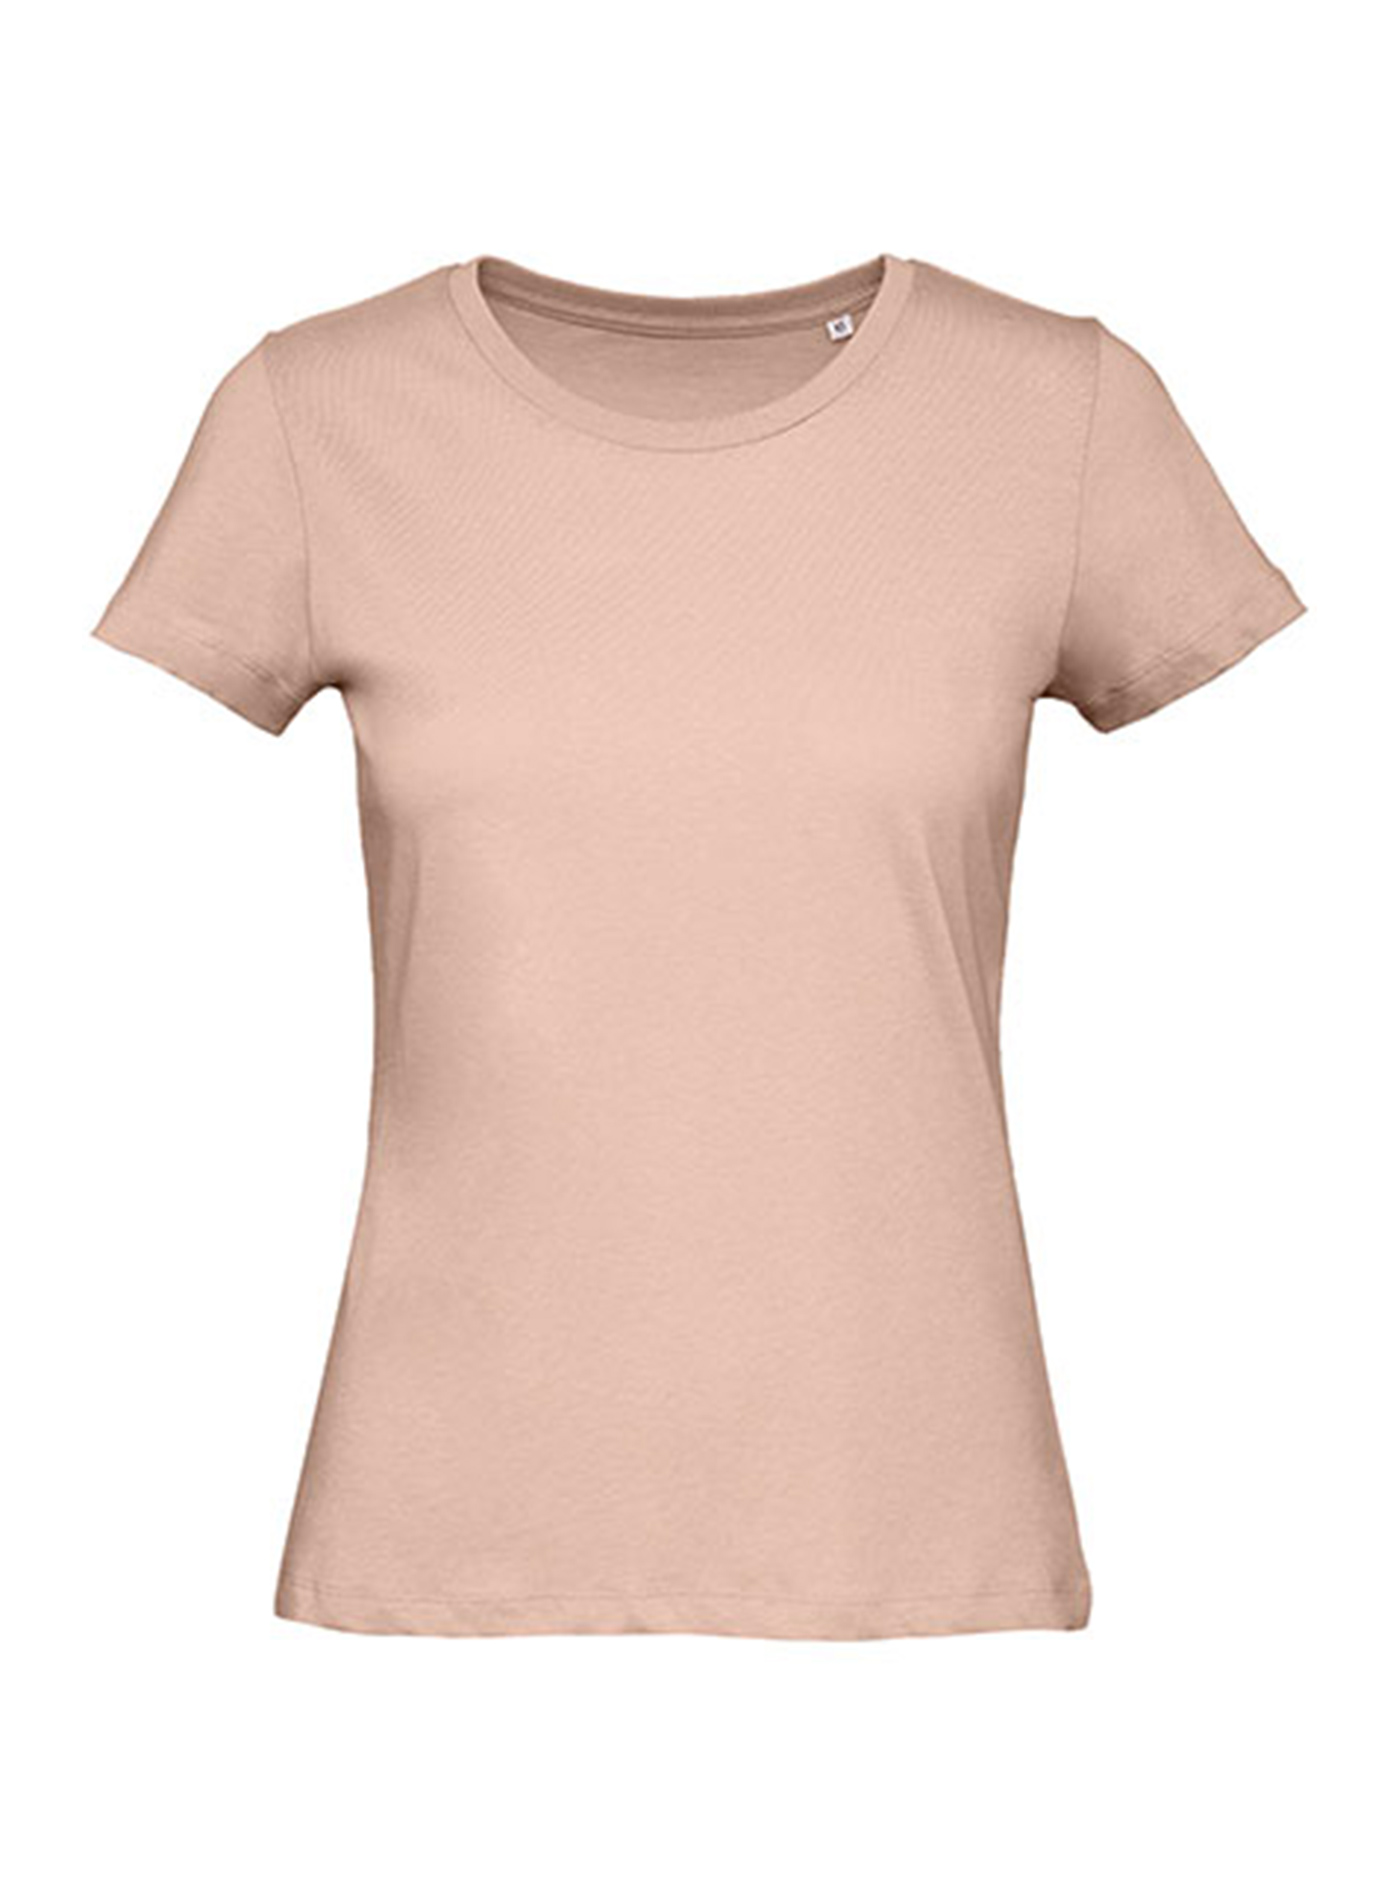 Dámské tričko B&C Collection Inspire - Bledě růžová M